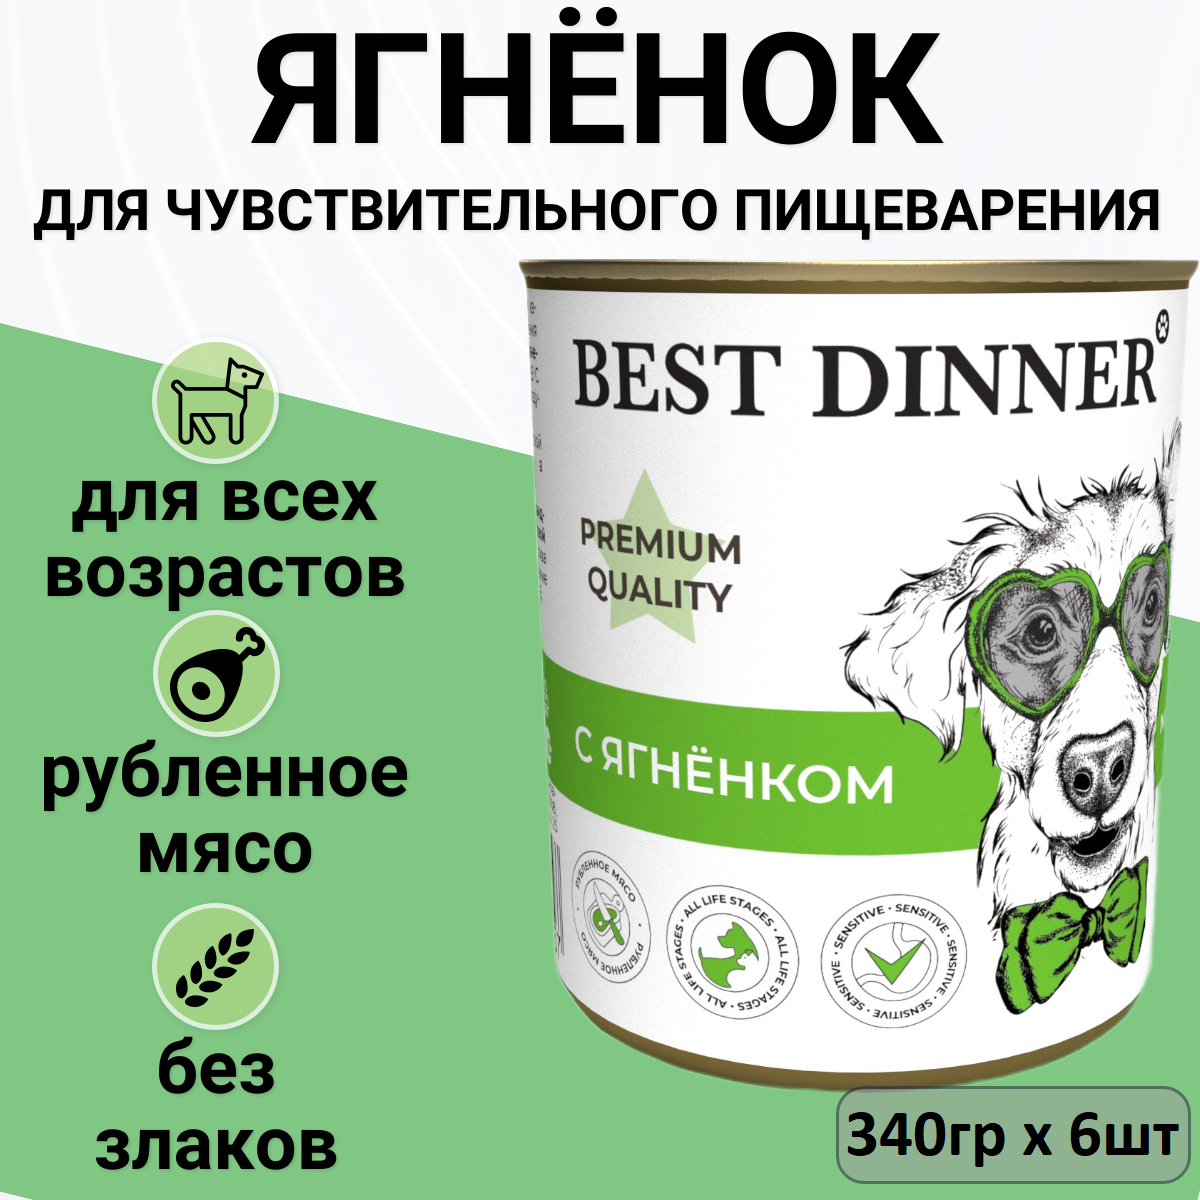 Влажный консервированный корм Best Dinner Бест Диннер консервы для щенков Premium Меню №1, ягненок, 340 гр. по 6 шт.